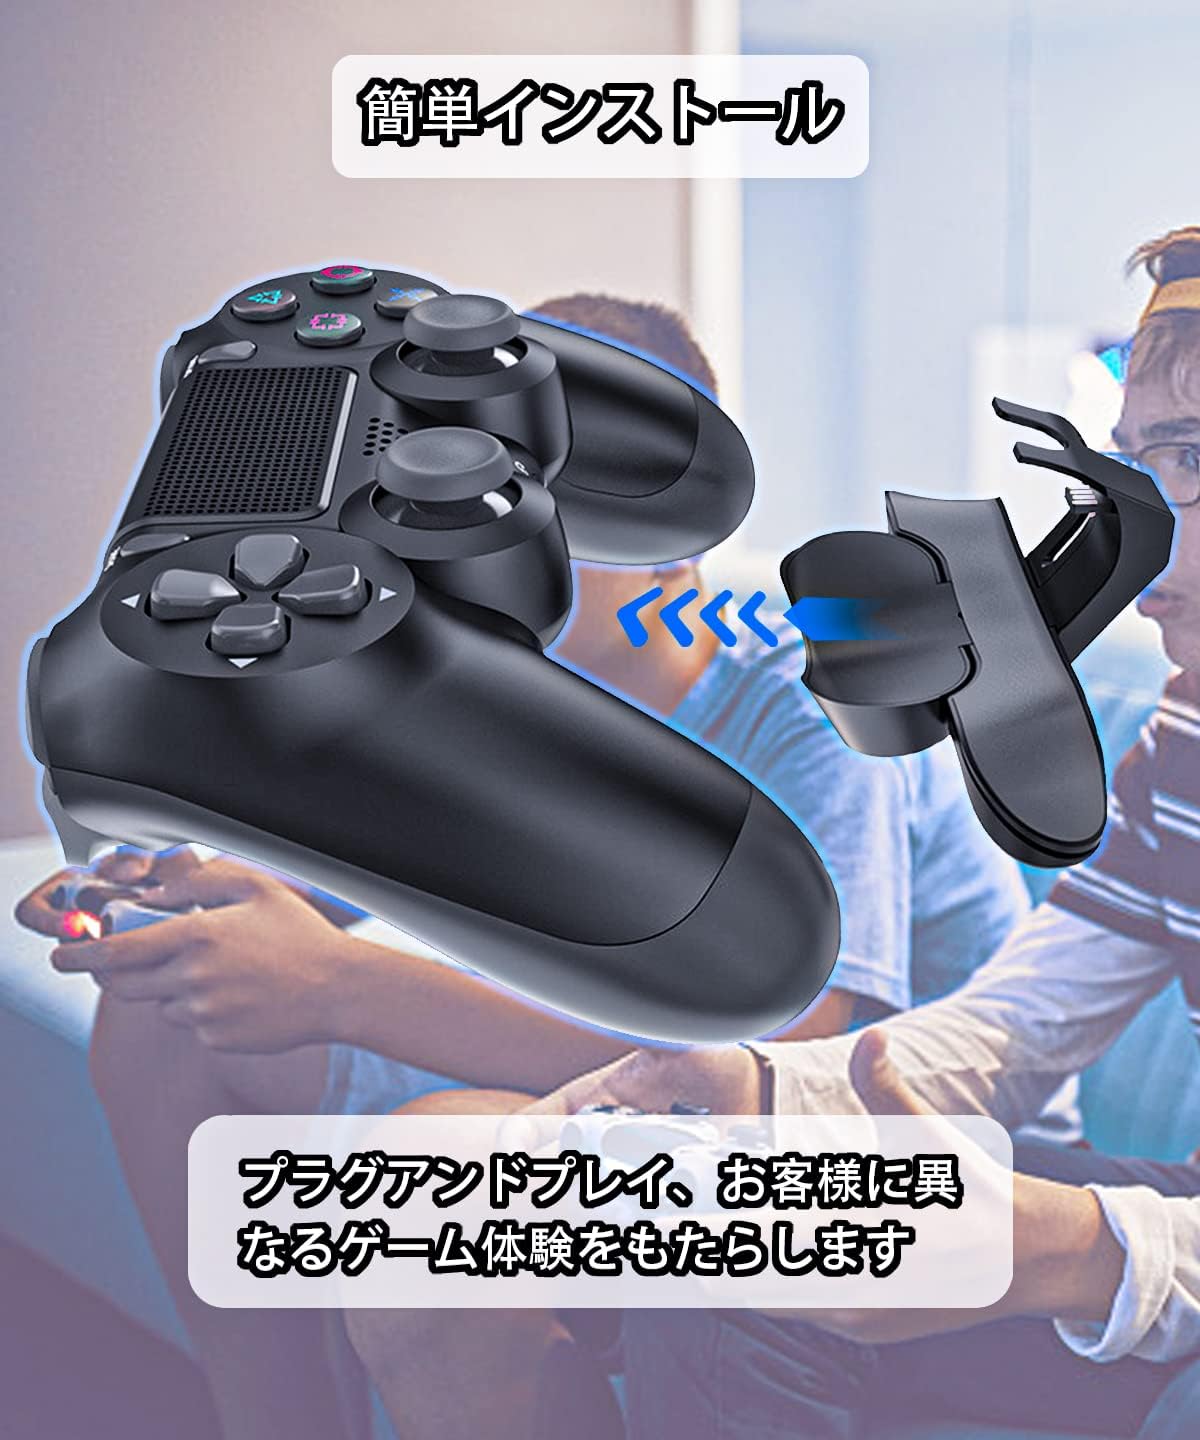 【2023年度新作】PS4 コントローラー用 背面パドル ブラック PS4 背面ボタンアタッチメント 簡単設定 リコイル制御 連射 ターボ付き 機能ボタンマッピング付き